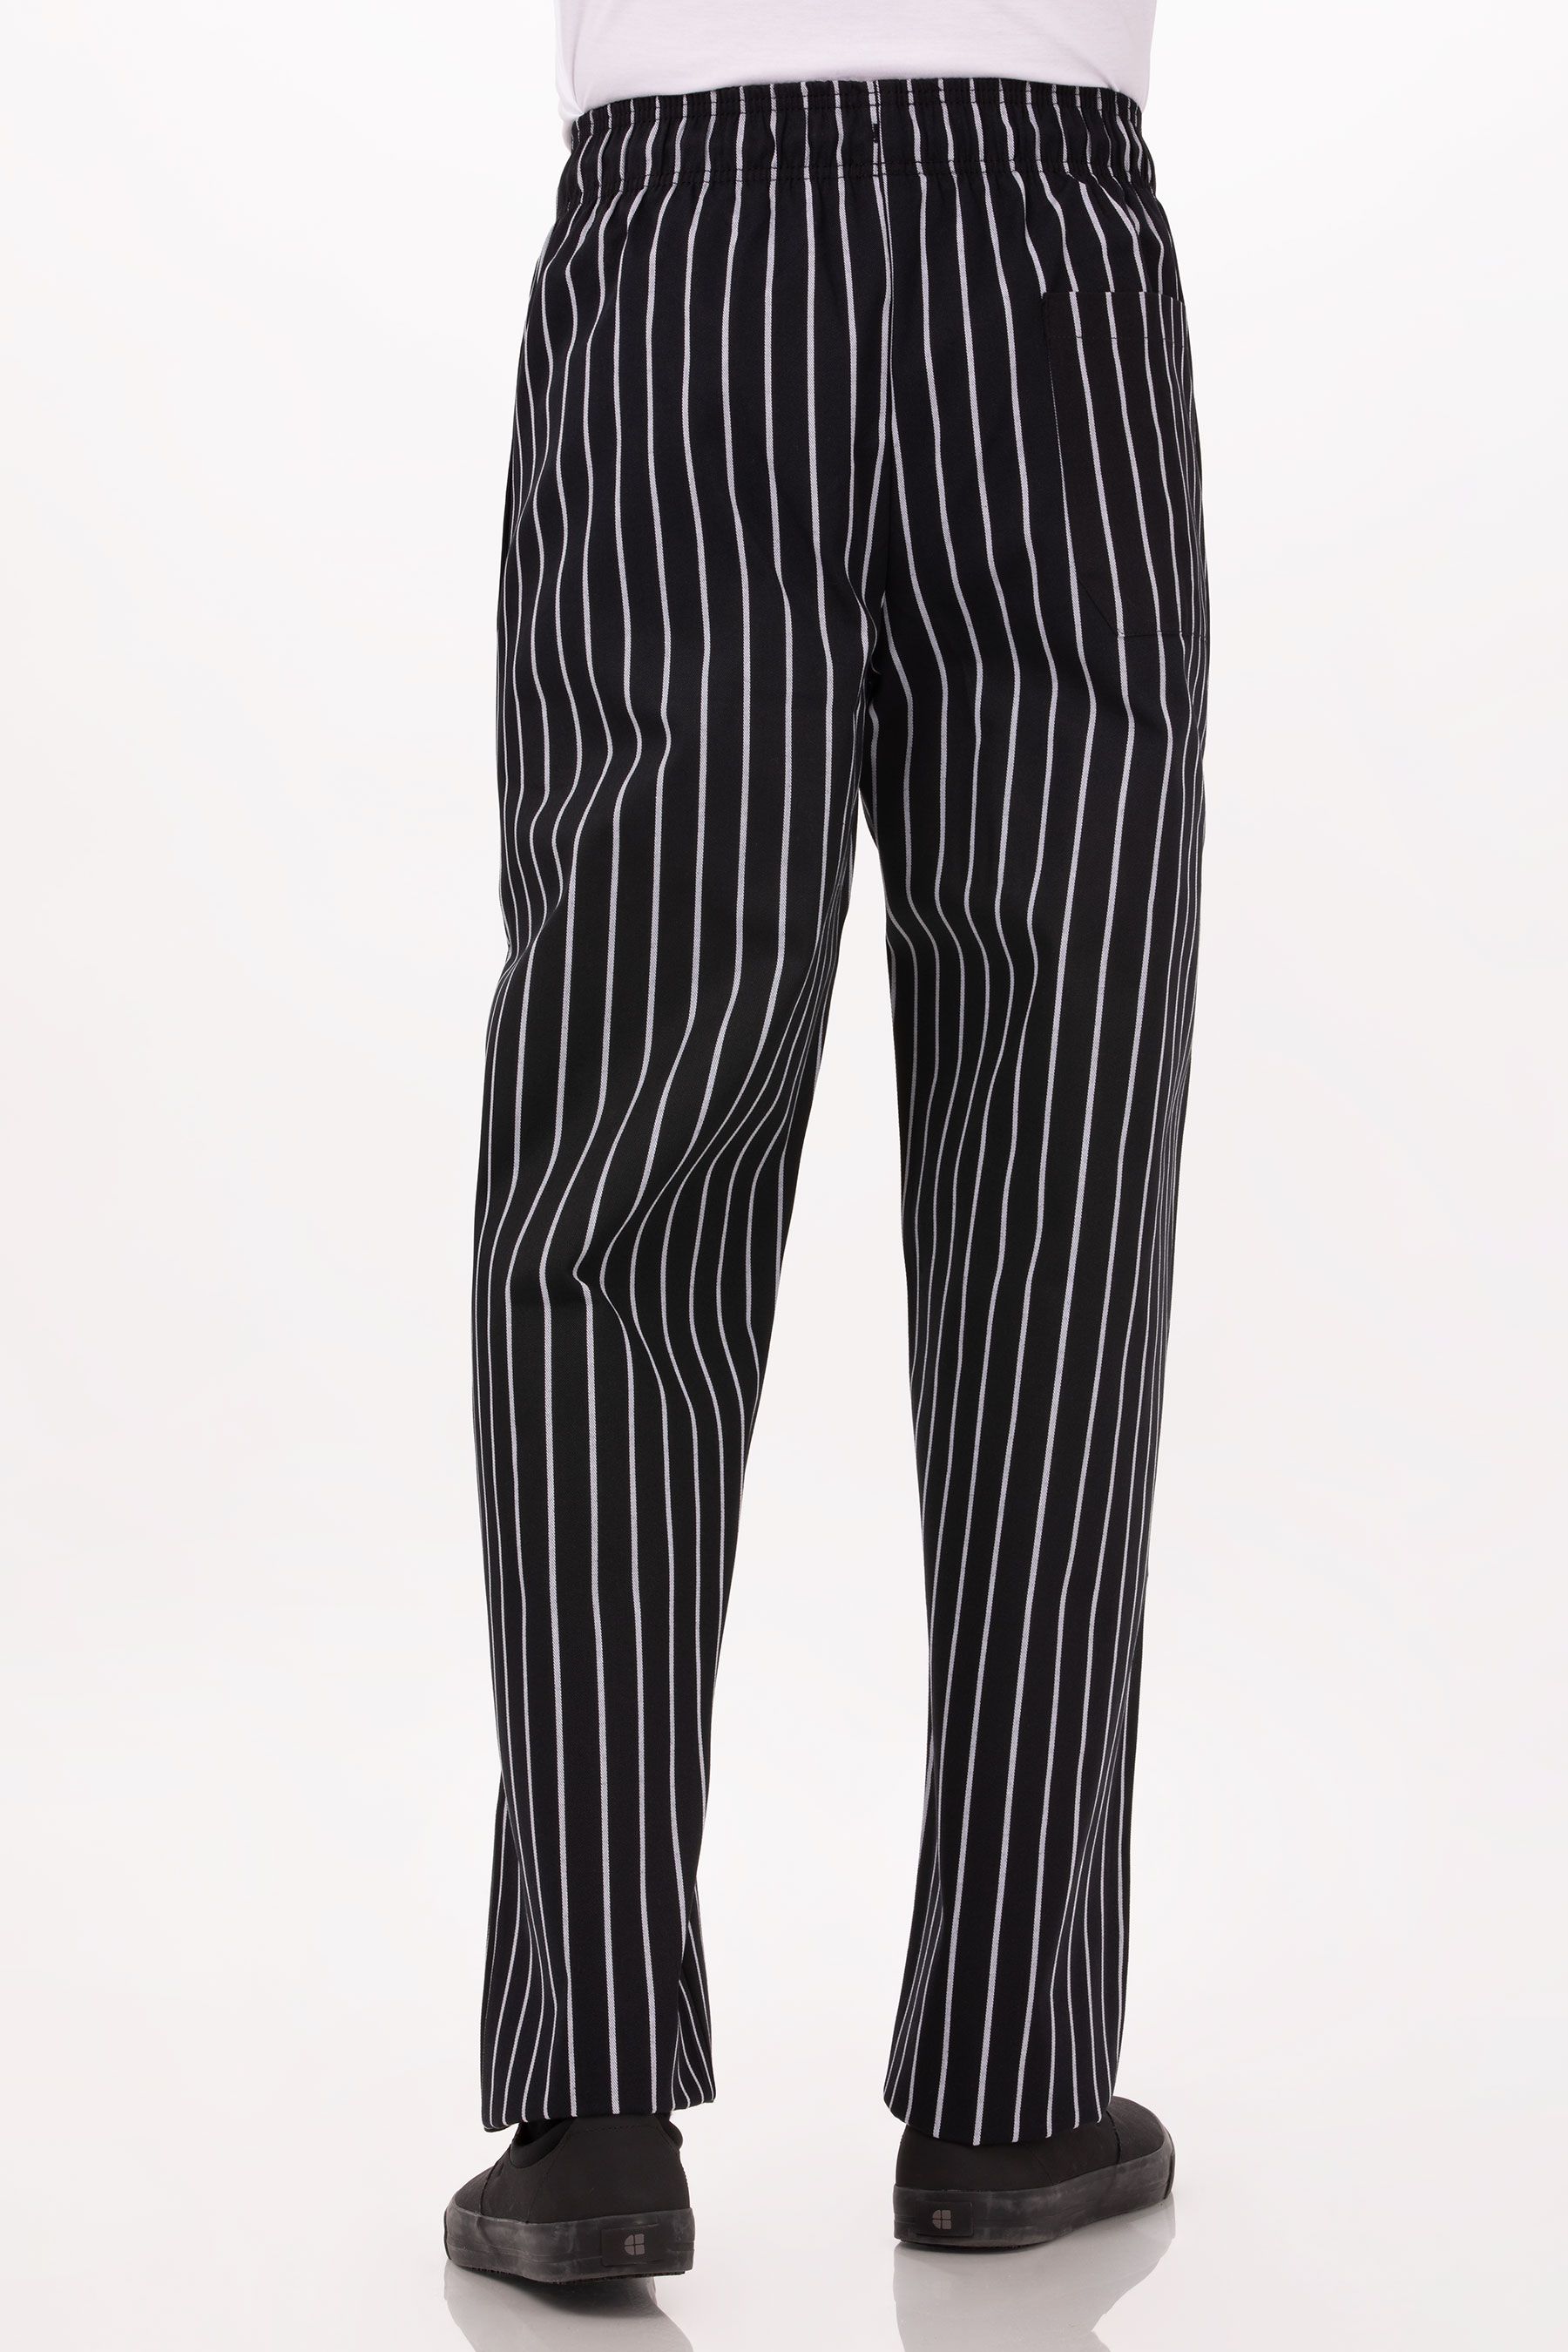 chef-works-designer-baggy-chef-pants-black-chalk-stripe